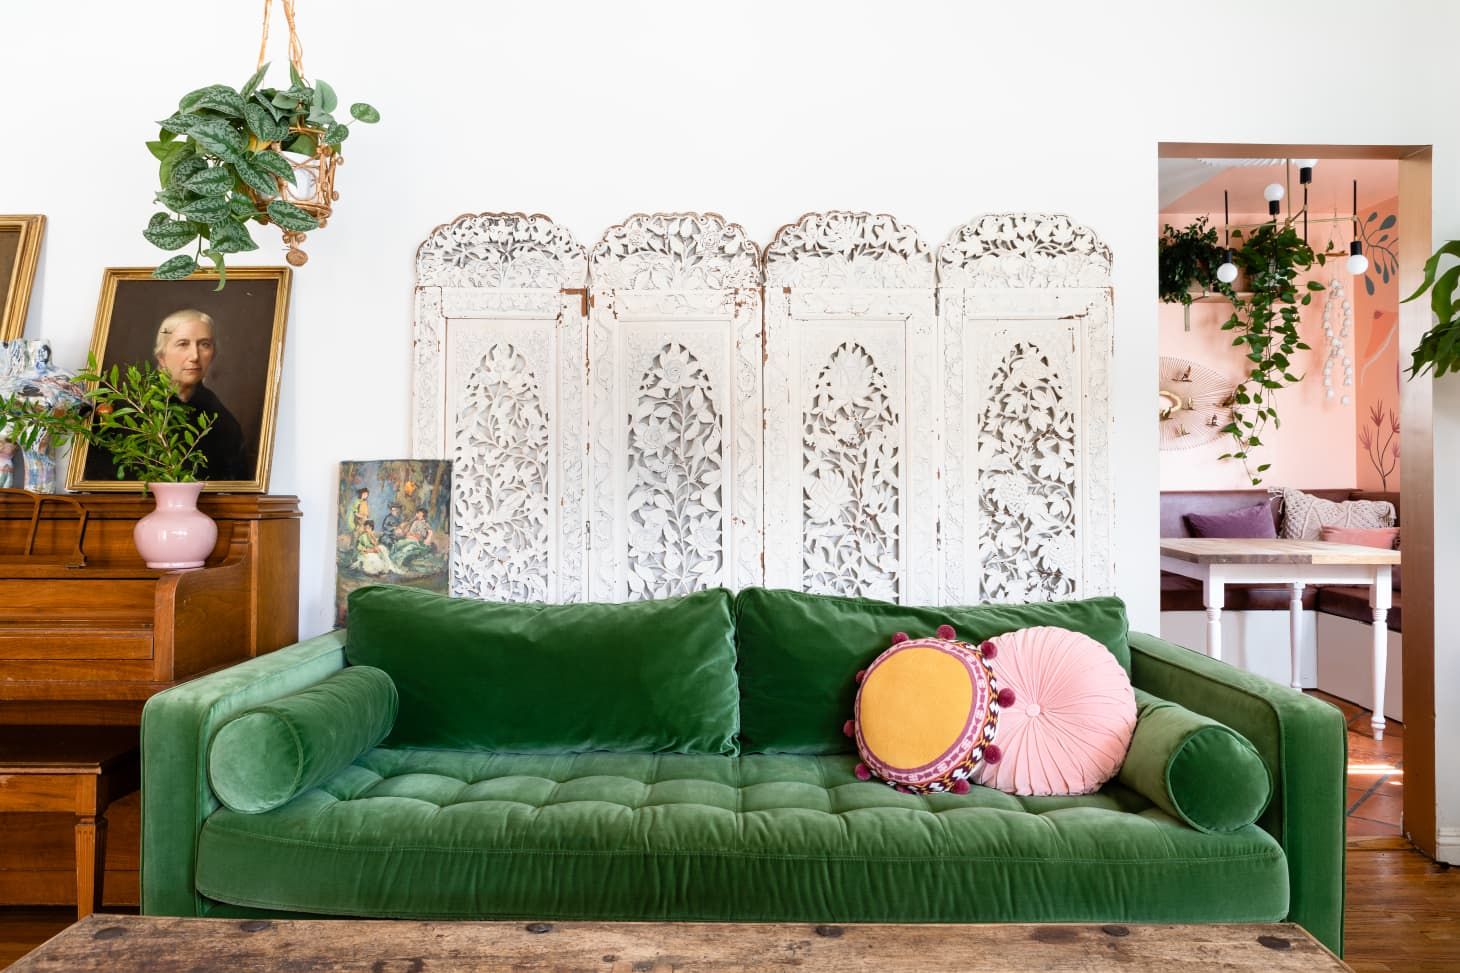 Мистецтво та вінтаж: як легко та стильно заповнити простір над диваном